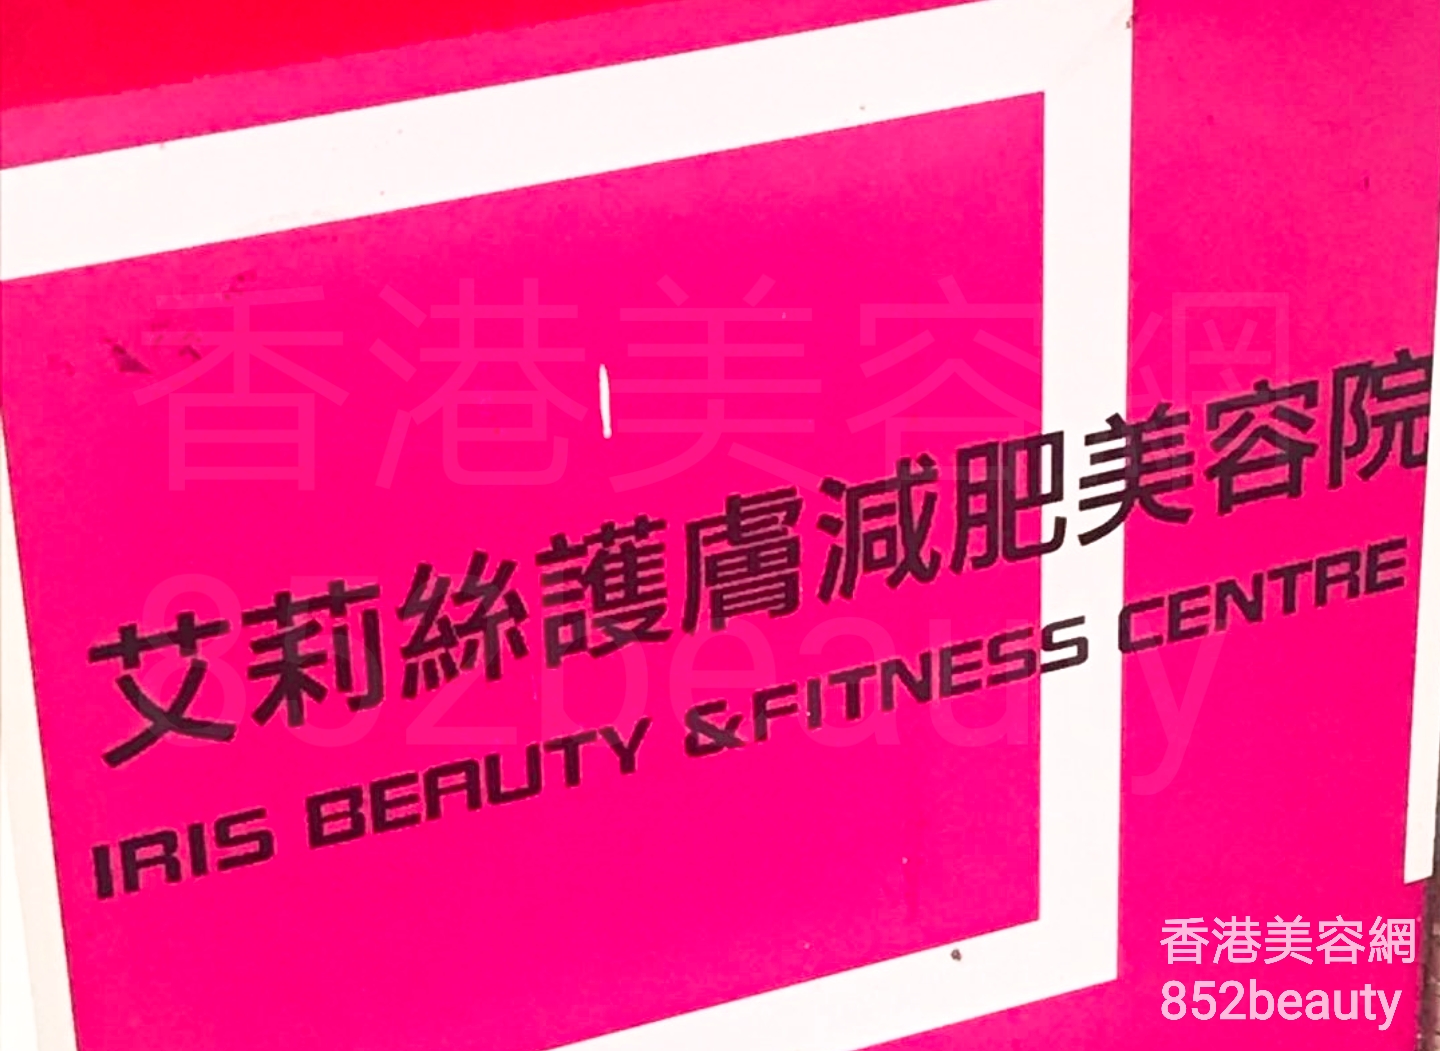 香港美容網 Hong Kong Beauty Salon 美容院 / 美容師: 艾莉絲護膚減肥美容院